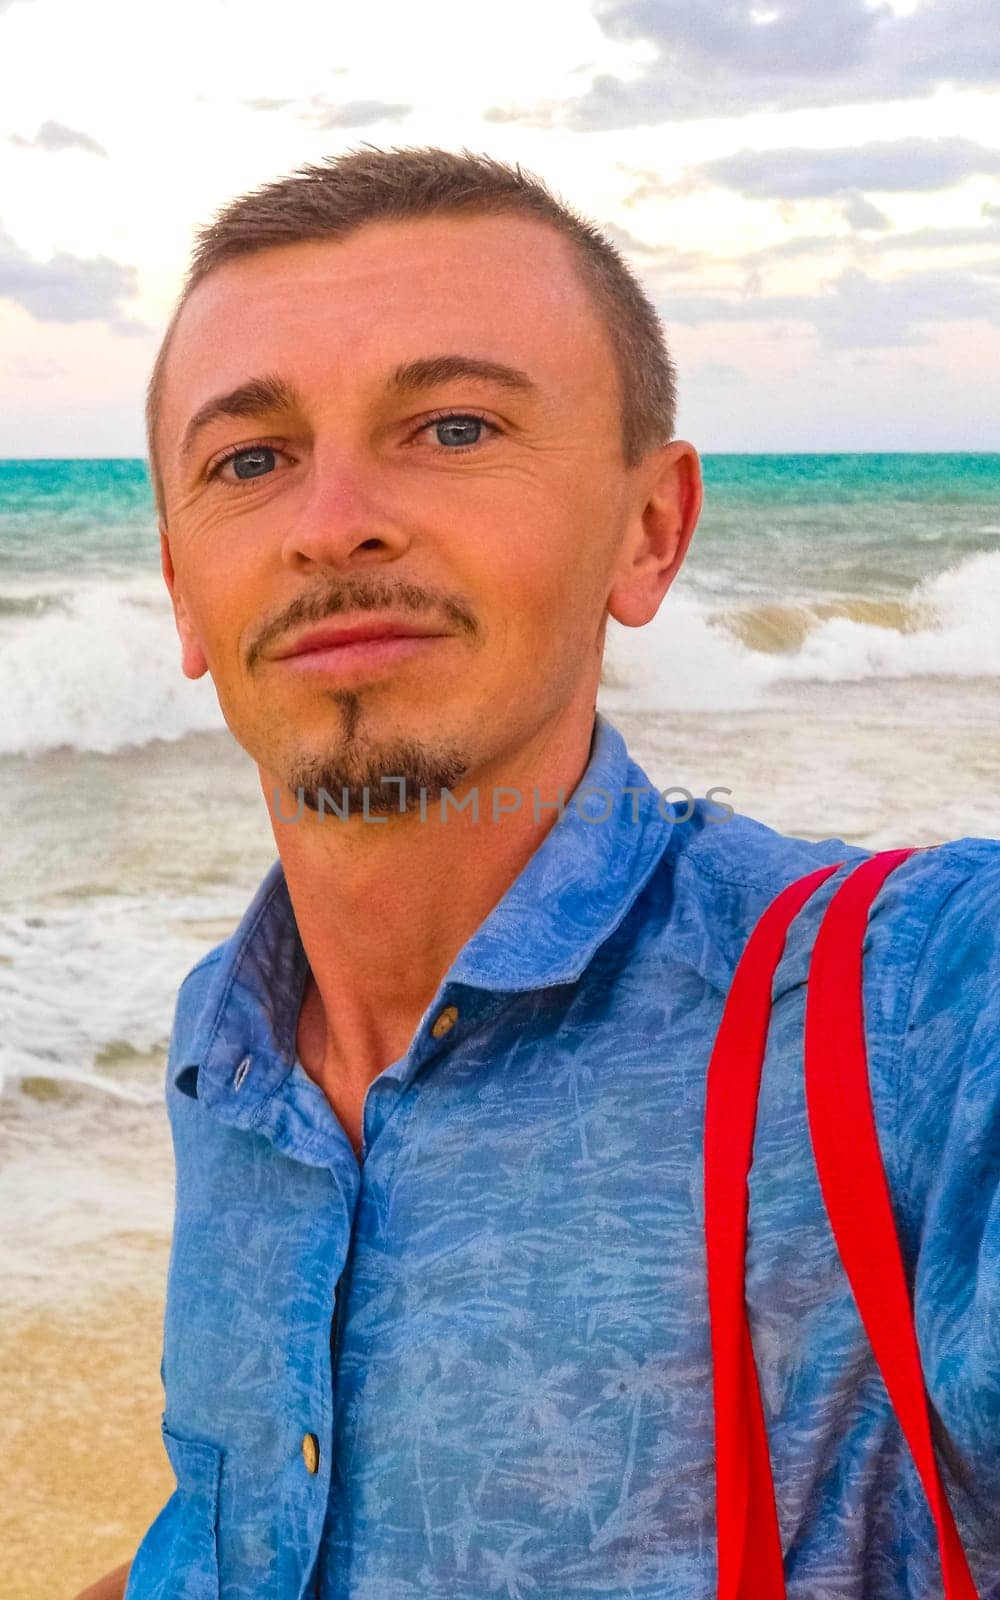 Male tourist Travelling man taking selfie Playa del Carmen Mexico. by Arkadij